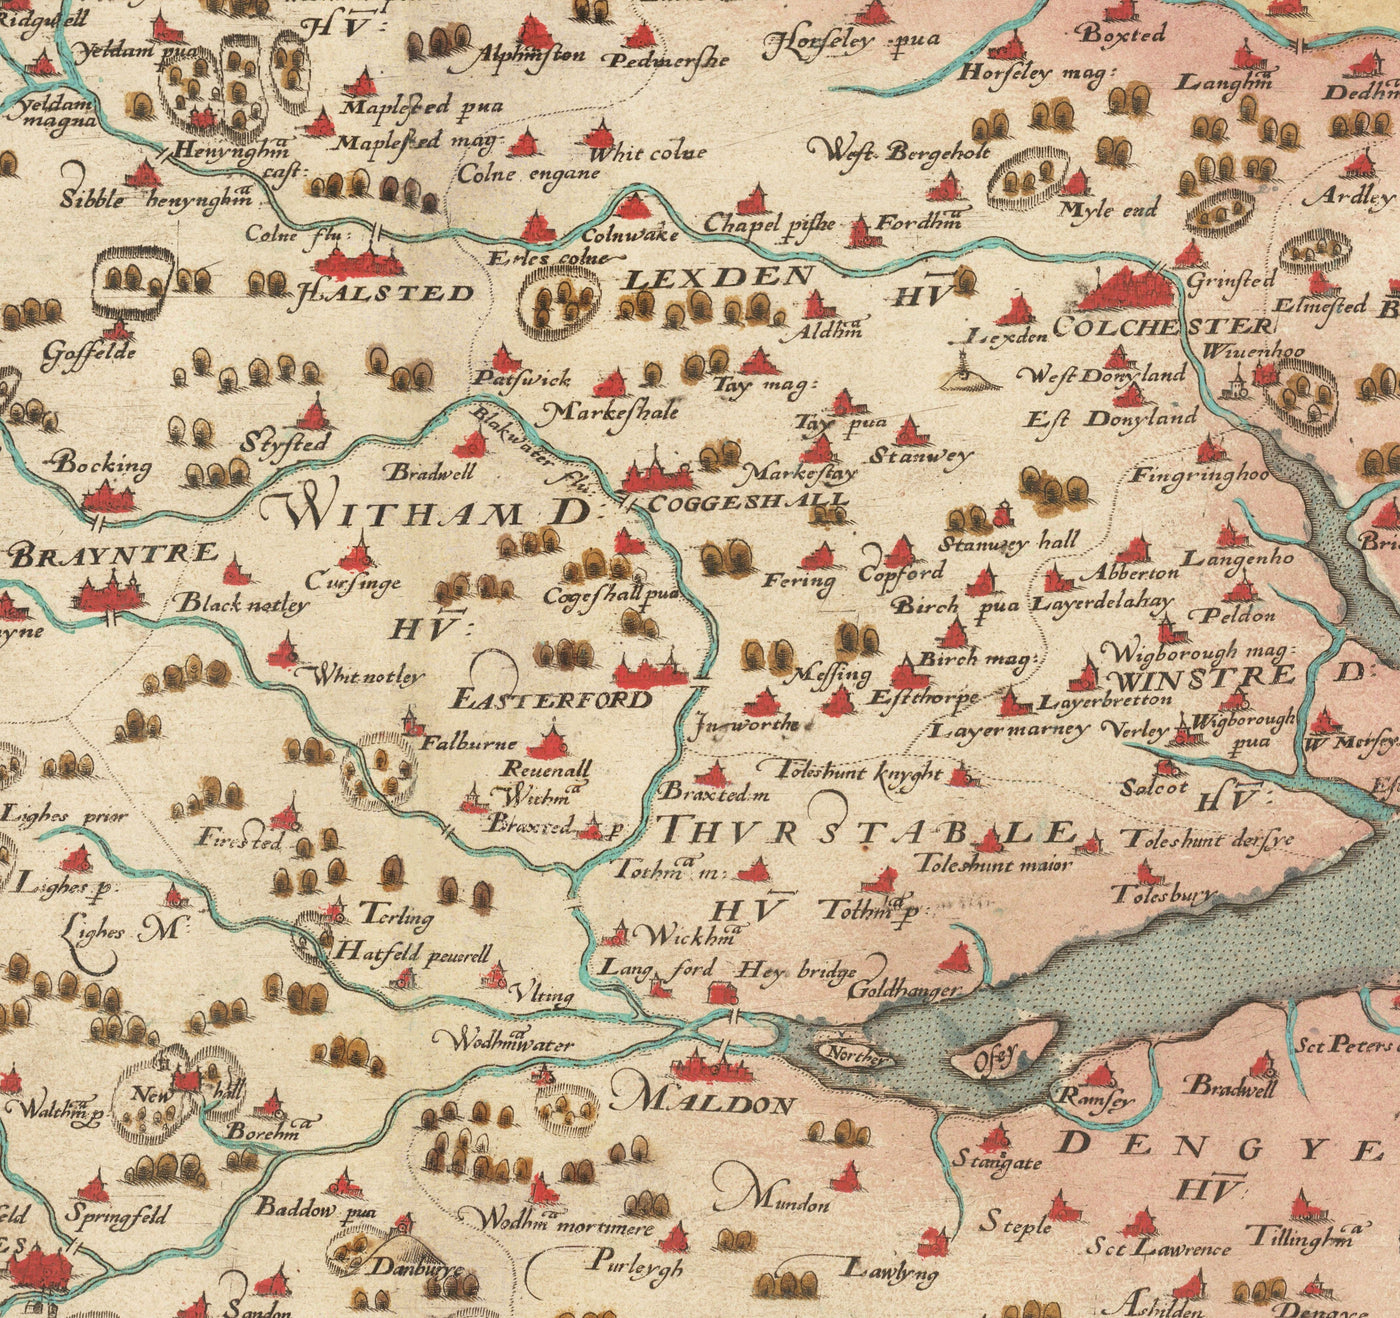 Ancienne carte d'Essex 1579 de Christopher Saxton - Première carte d'Essex - Southend, Colchester, Chelmsford, Romford, Dagenham, Brentwood